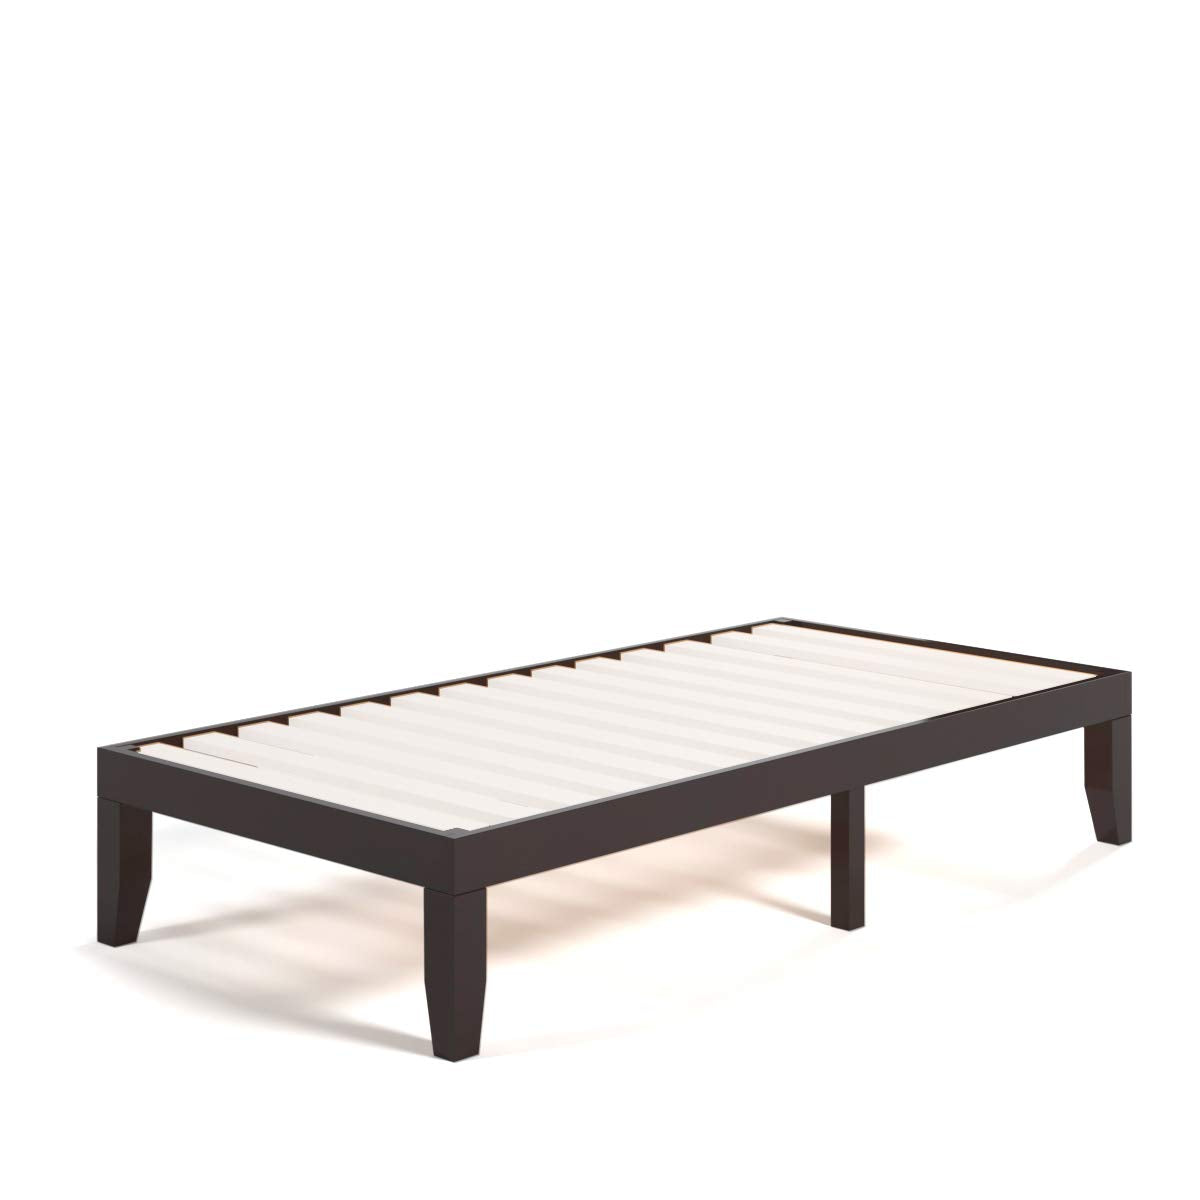 Solid Wood Platform Bed Frame - Giantex